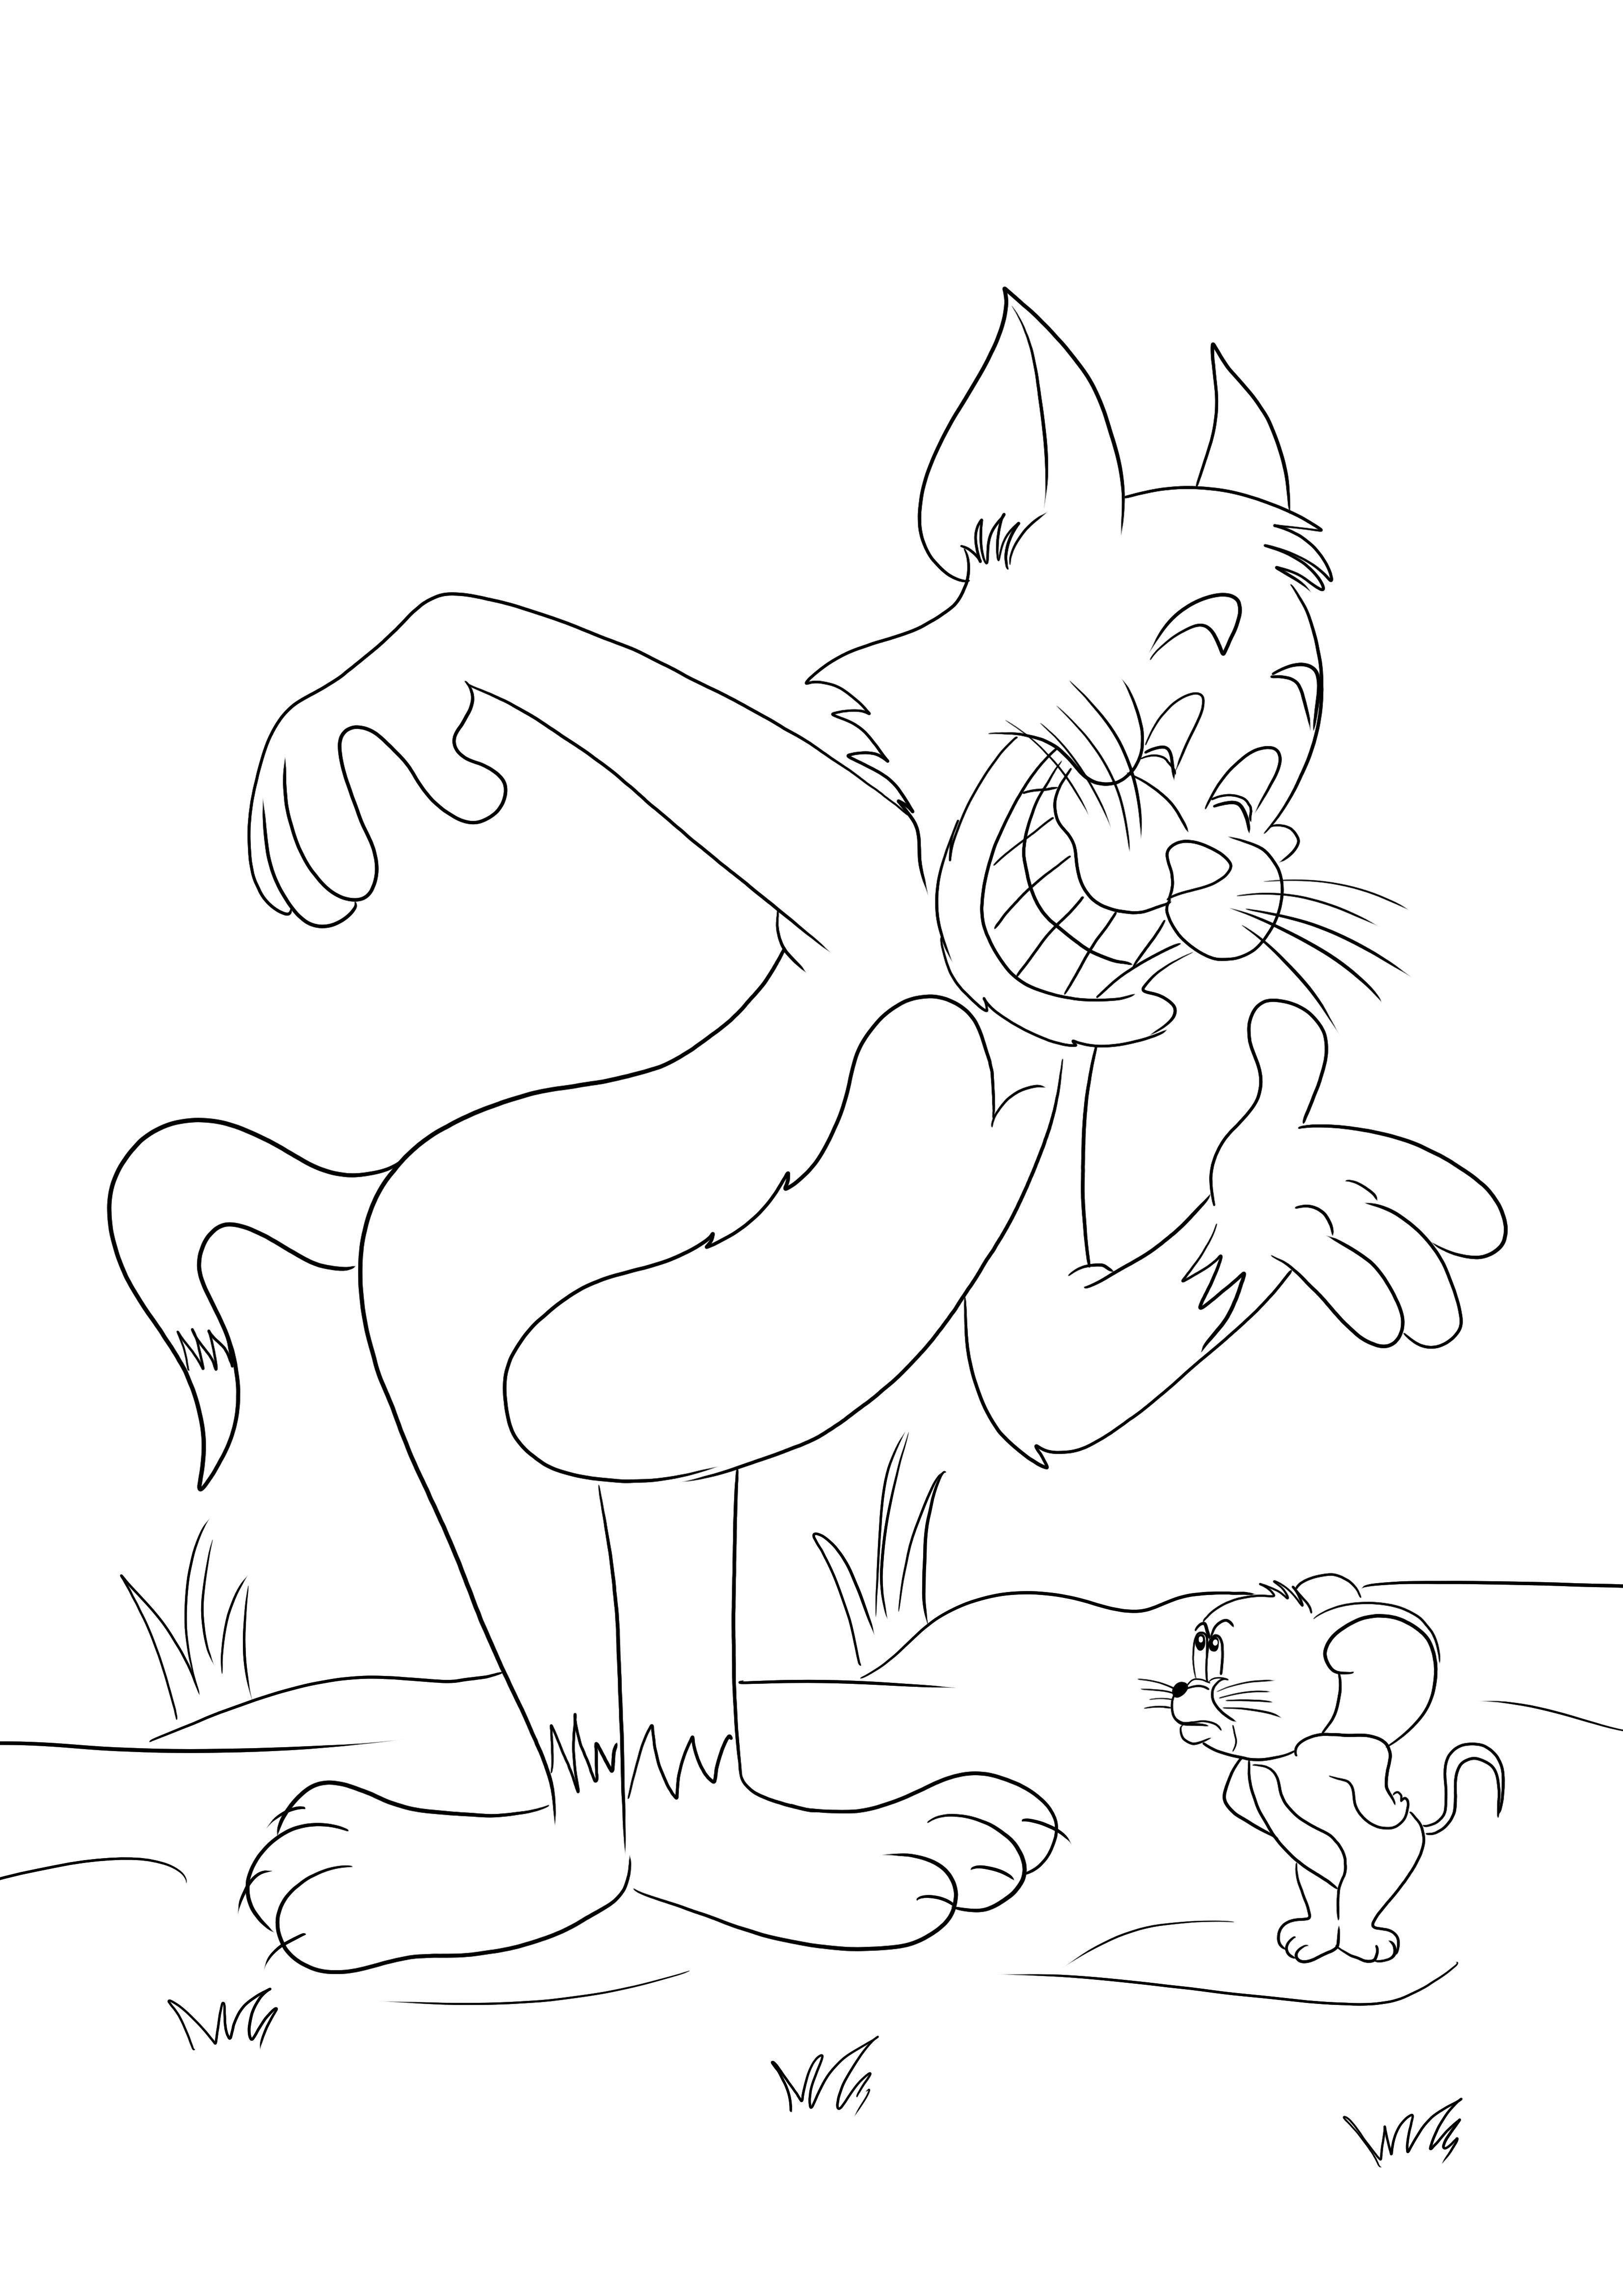 Impressão gratuita de Tom e Jerry lutando novamente para colorir facilmente para crianças